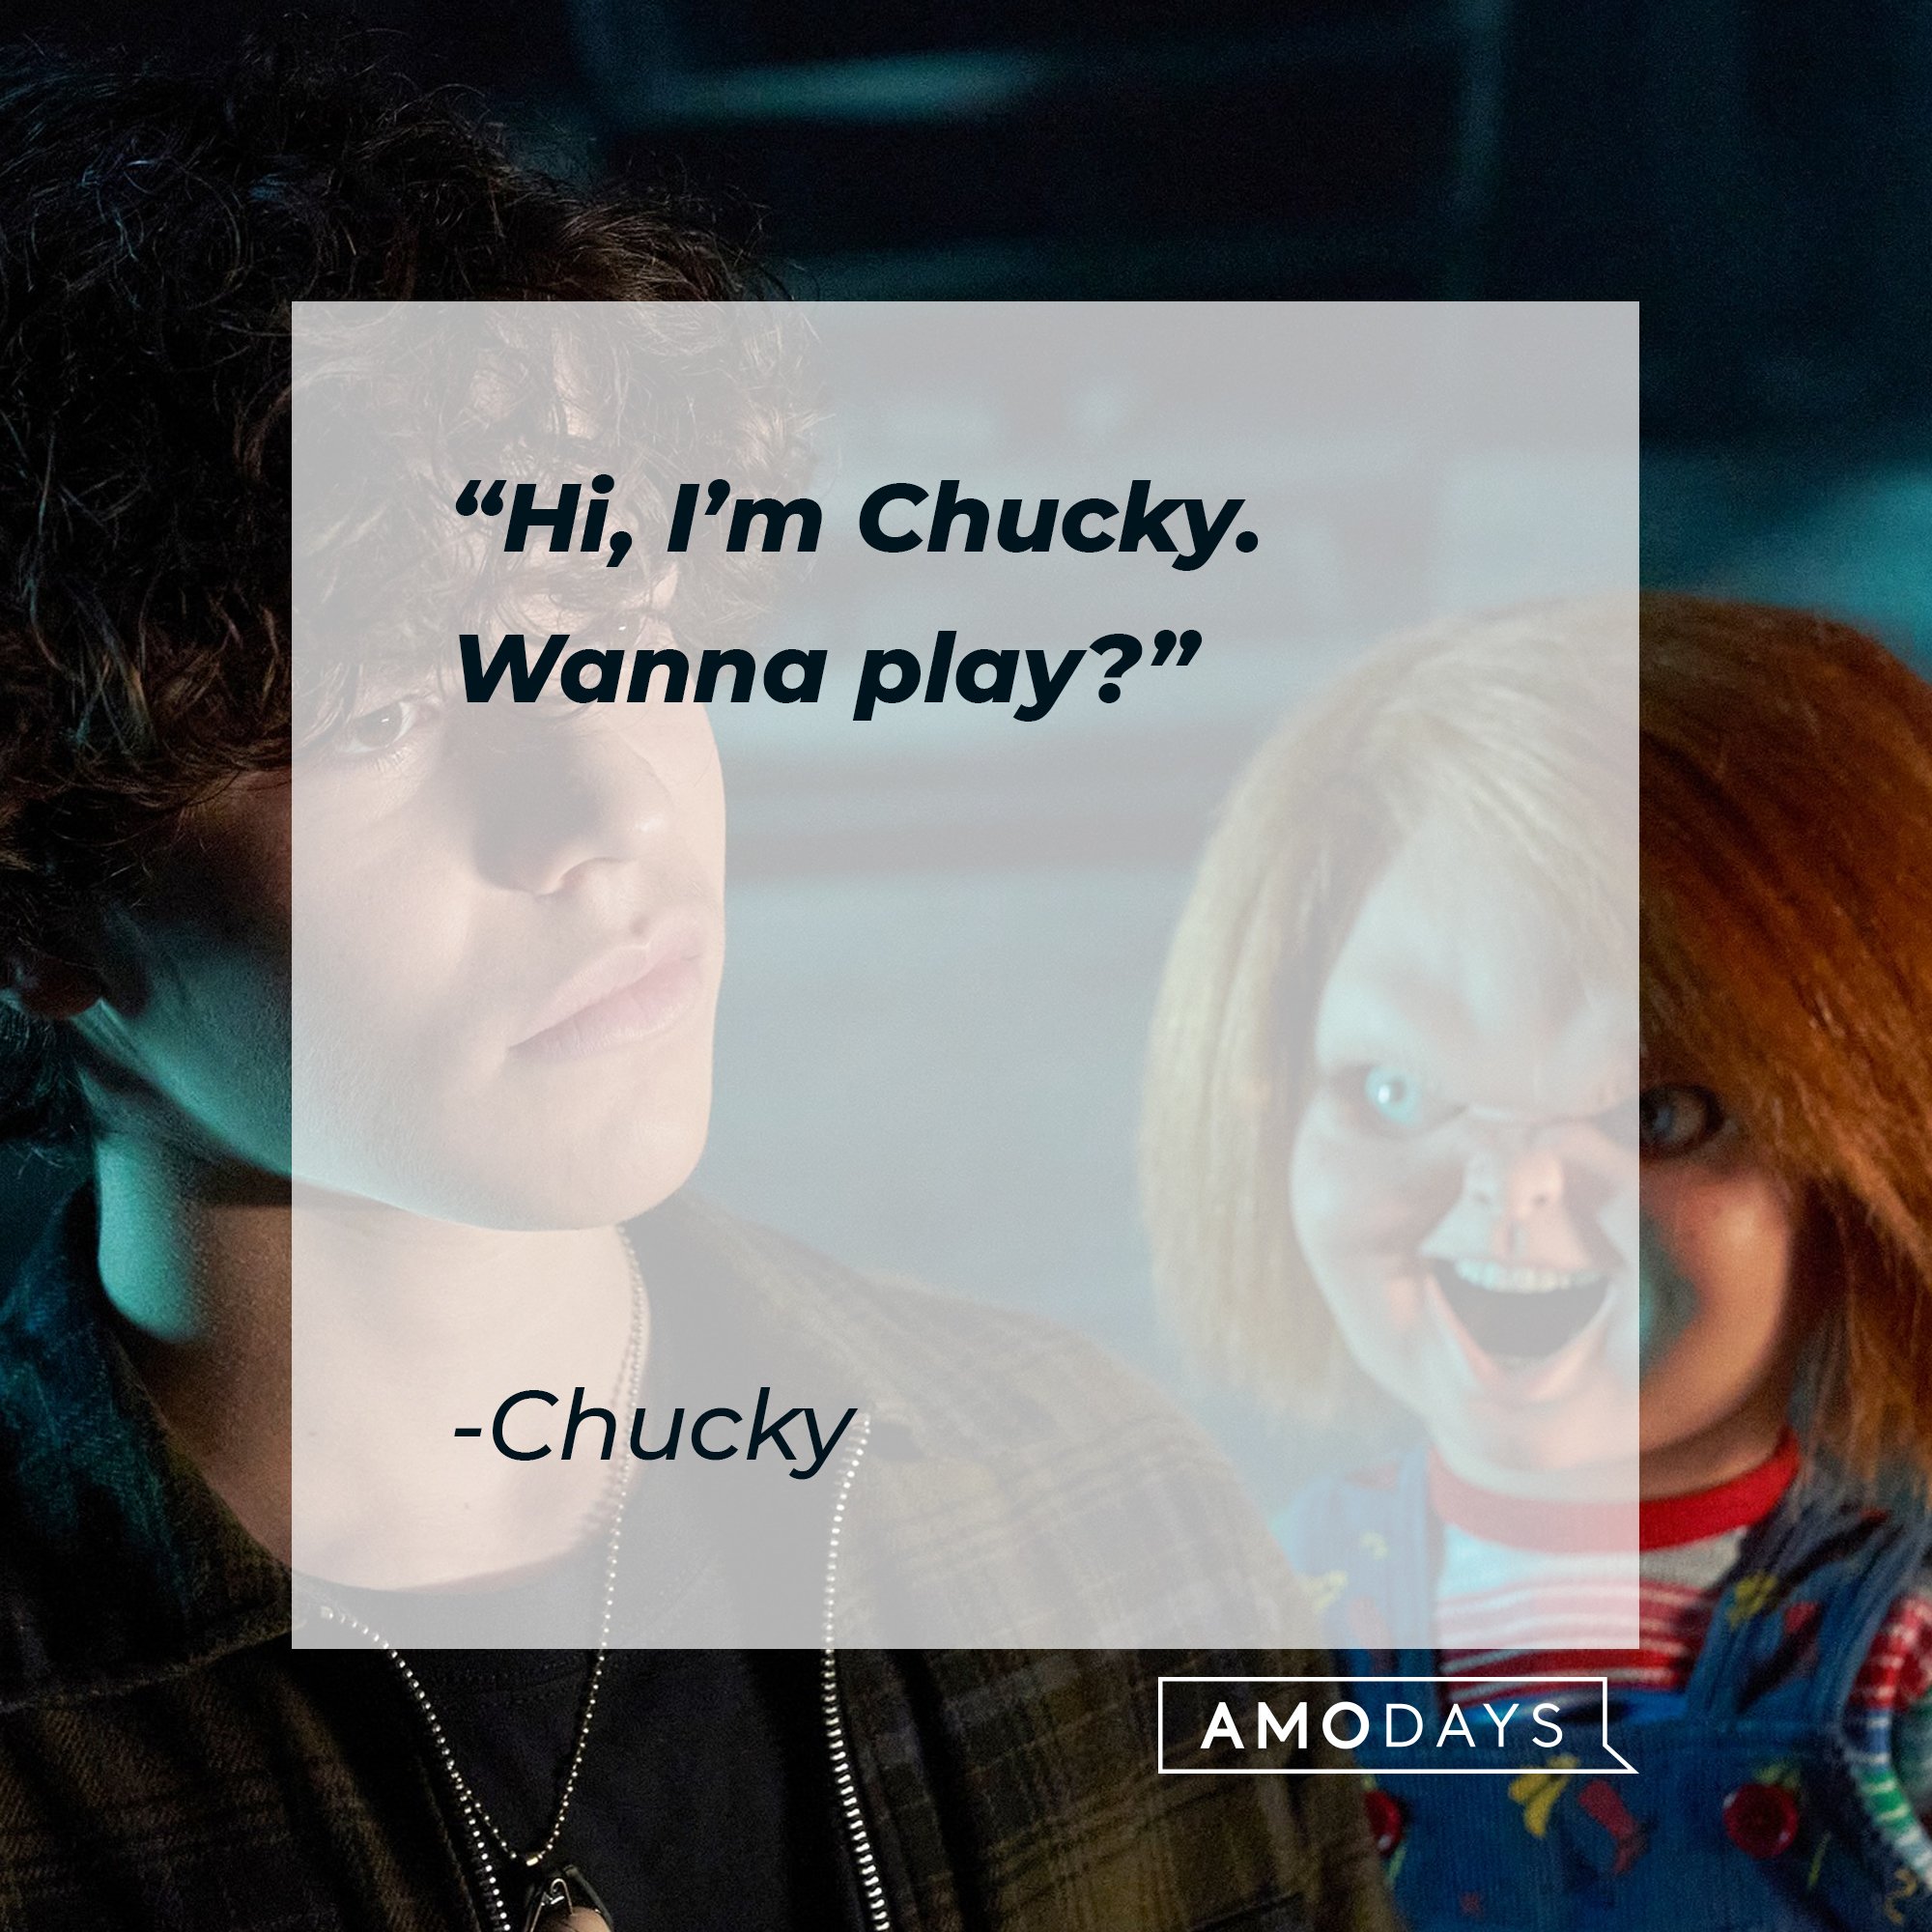 Chucky's quote: "Hi, I'm Chucky. Wanna play?" | Image: AmoDays